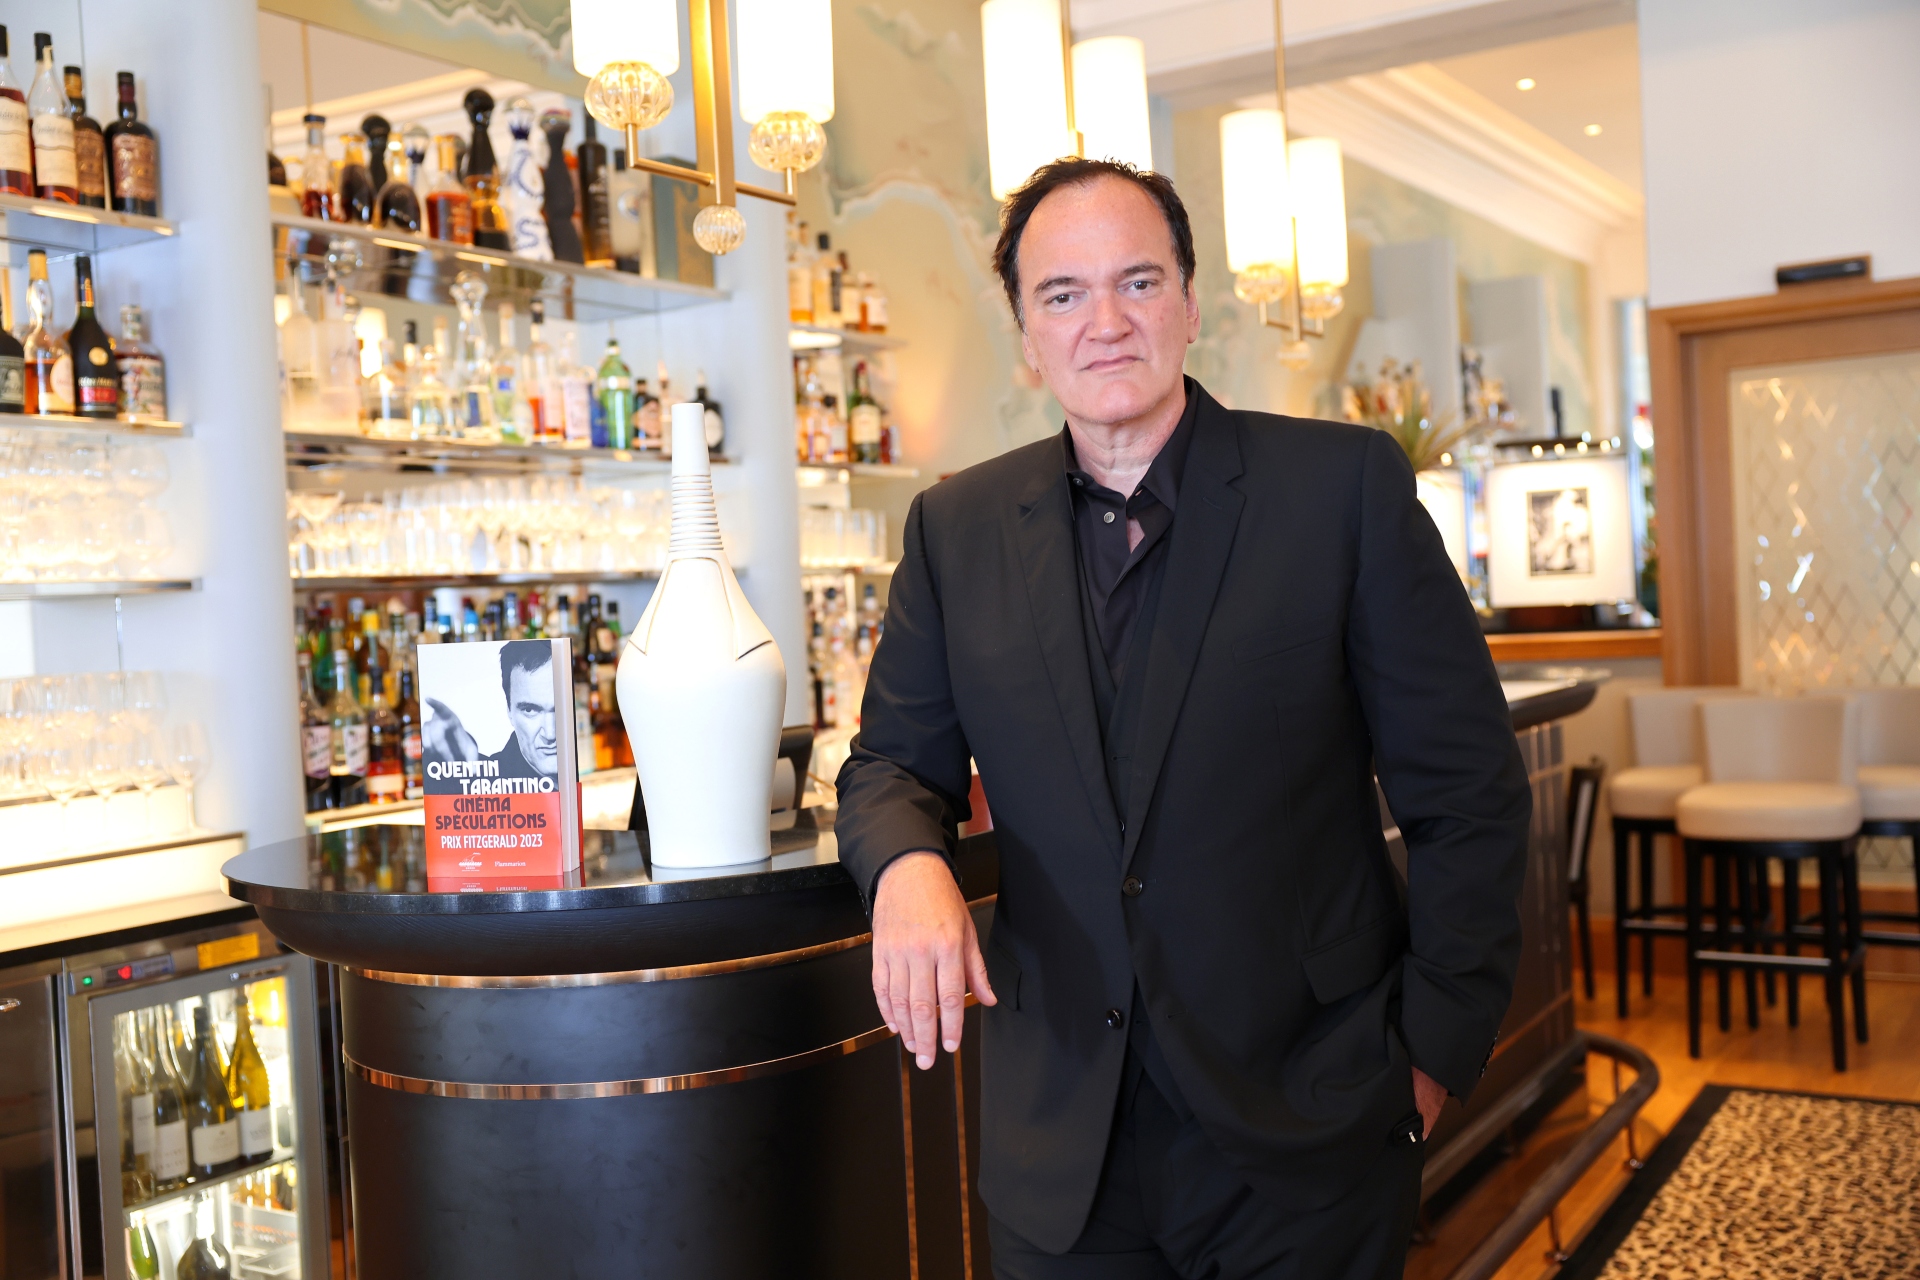 Quentin Tarantino ist dafür bekannt, Karrieren wiederzubeleben